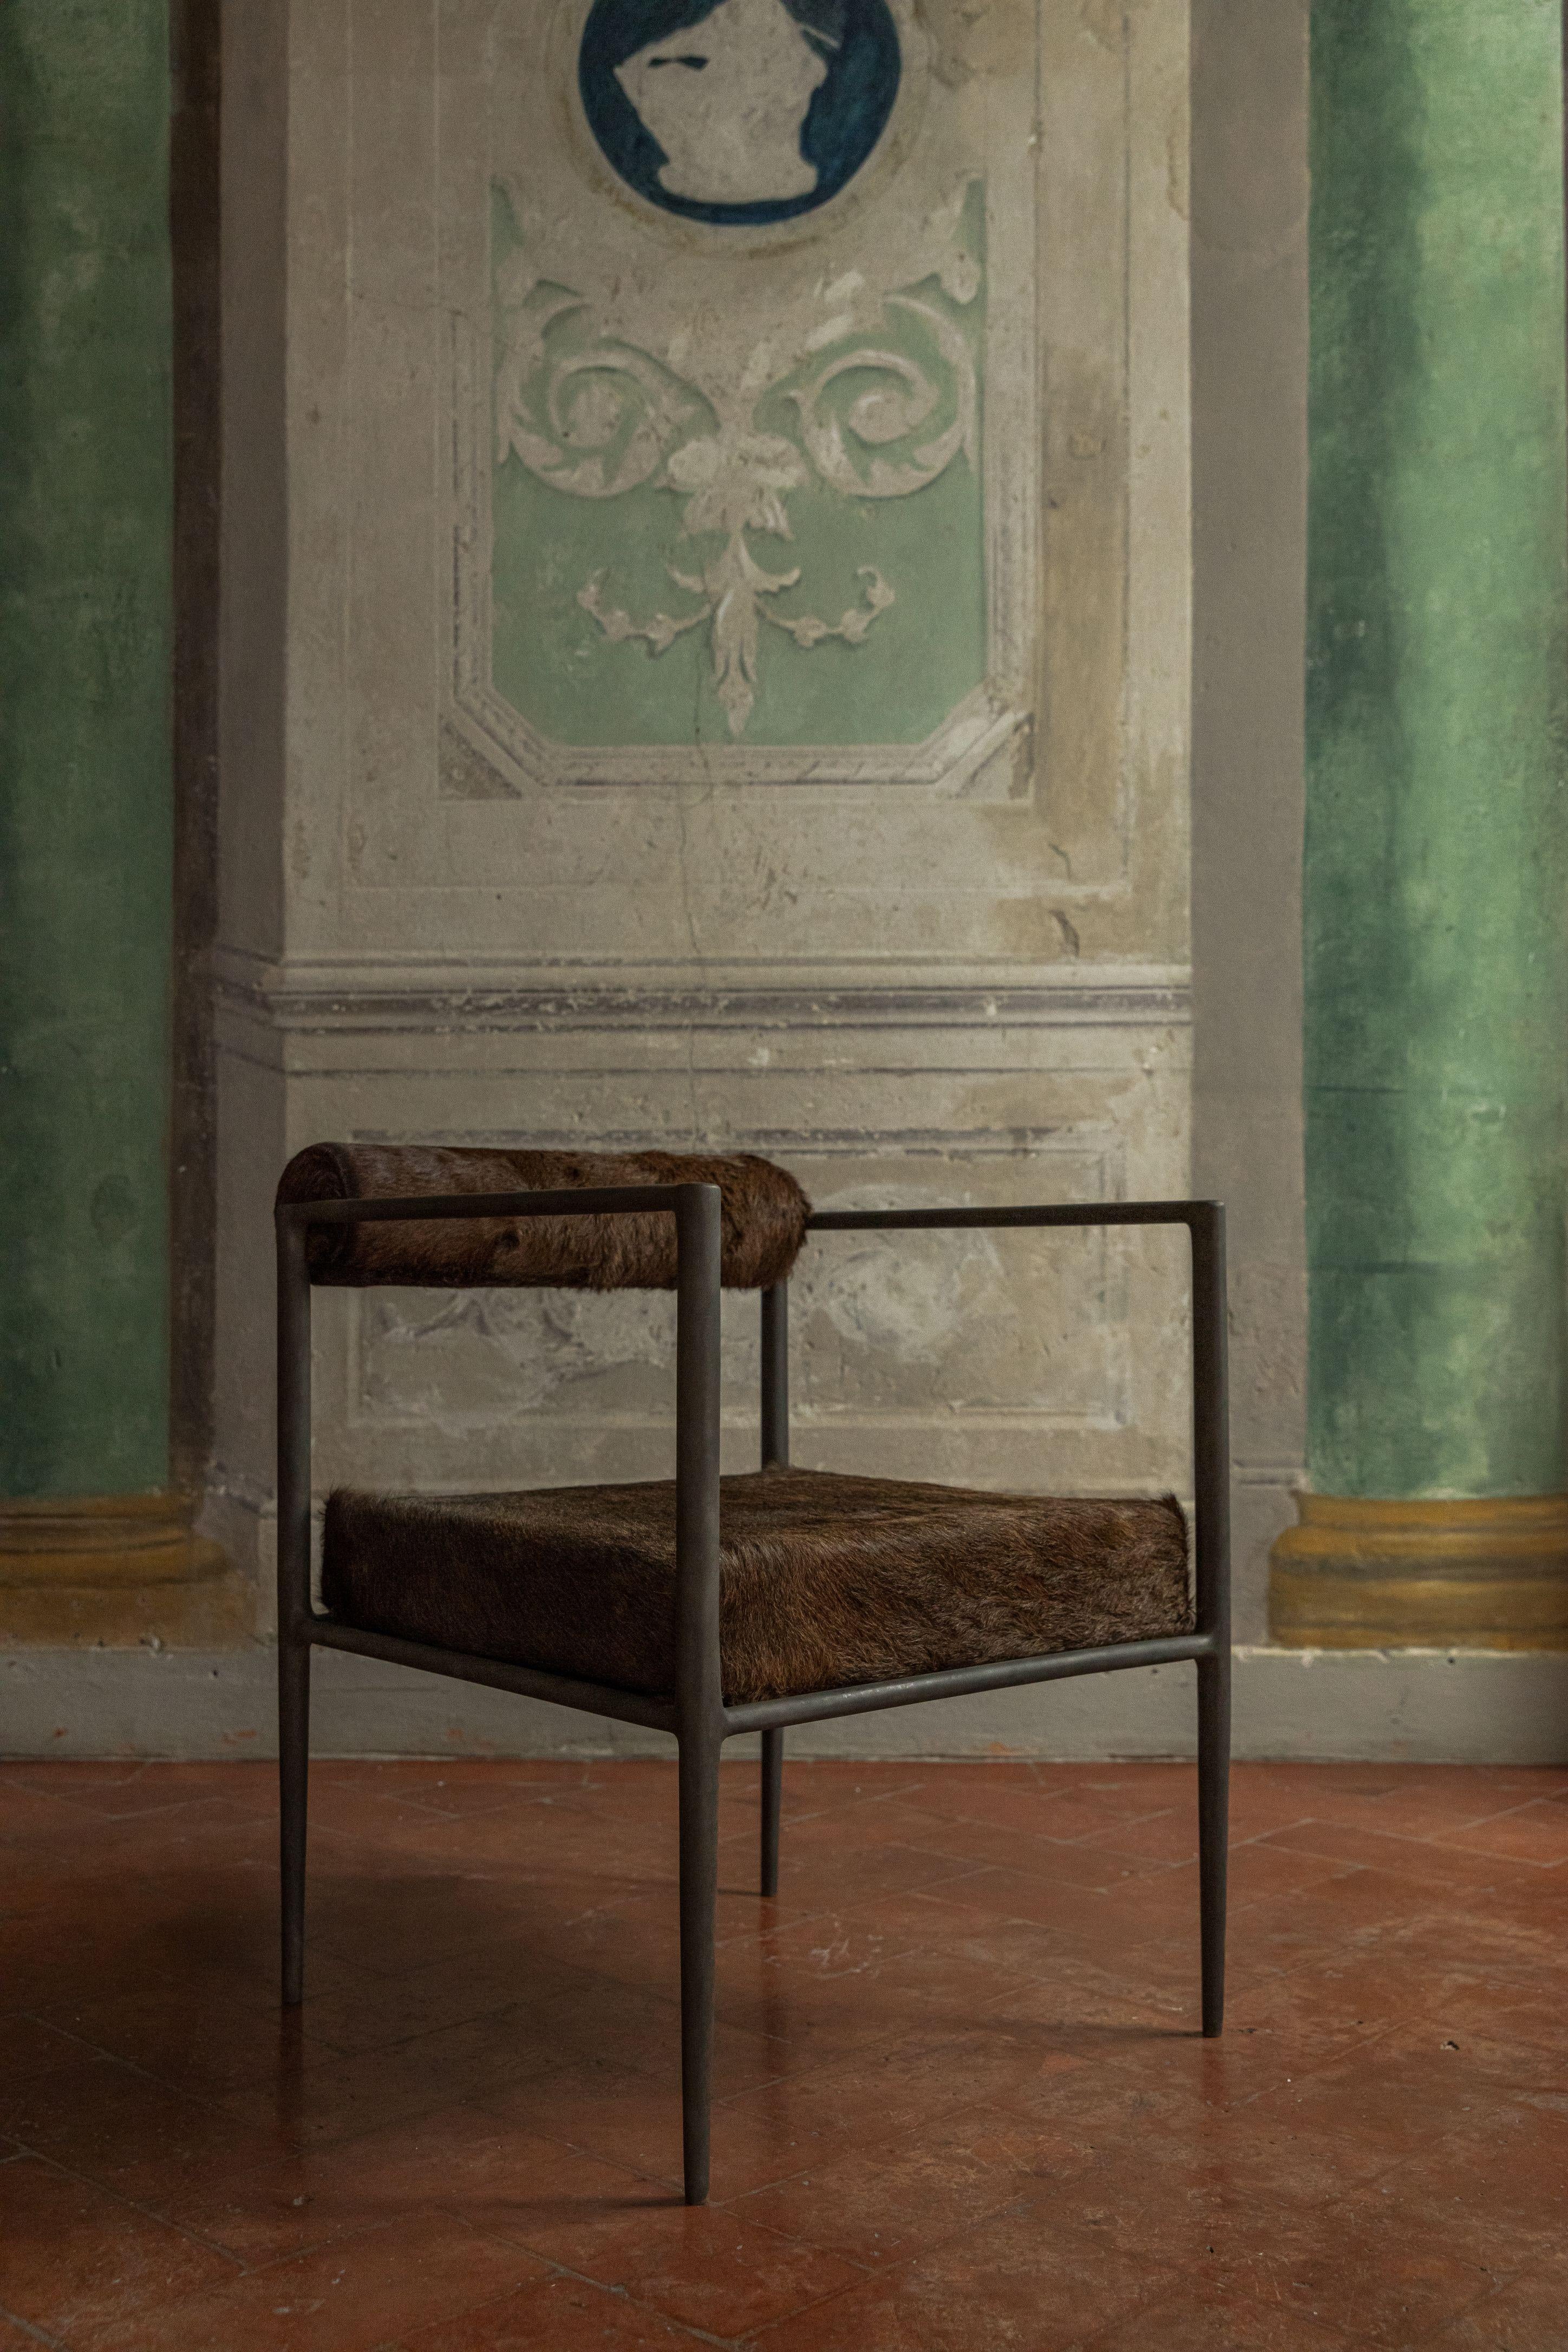 Quadratischer Alchemie-Stuhl von Rick Owens
Abmessungen: L 60 x B 60 x H 81 cm
MATERIALIEN: Bronze, Kamelhaut
Gewicht: 43 kg

Sowohl in heller als auch in dunkler Farbe erhältlich.

Rick Owens ist ein in Kalifornien geborener Mode- und